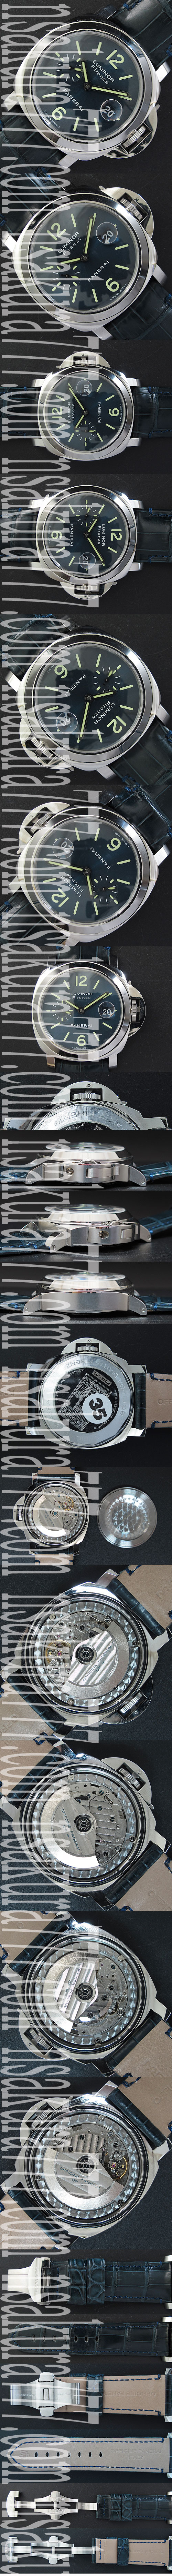 スーパーコピー時計パネライ ルミノール マリーナ フィレンツェPAM229　，ハイエンドモデル - ウインドウを閉じる